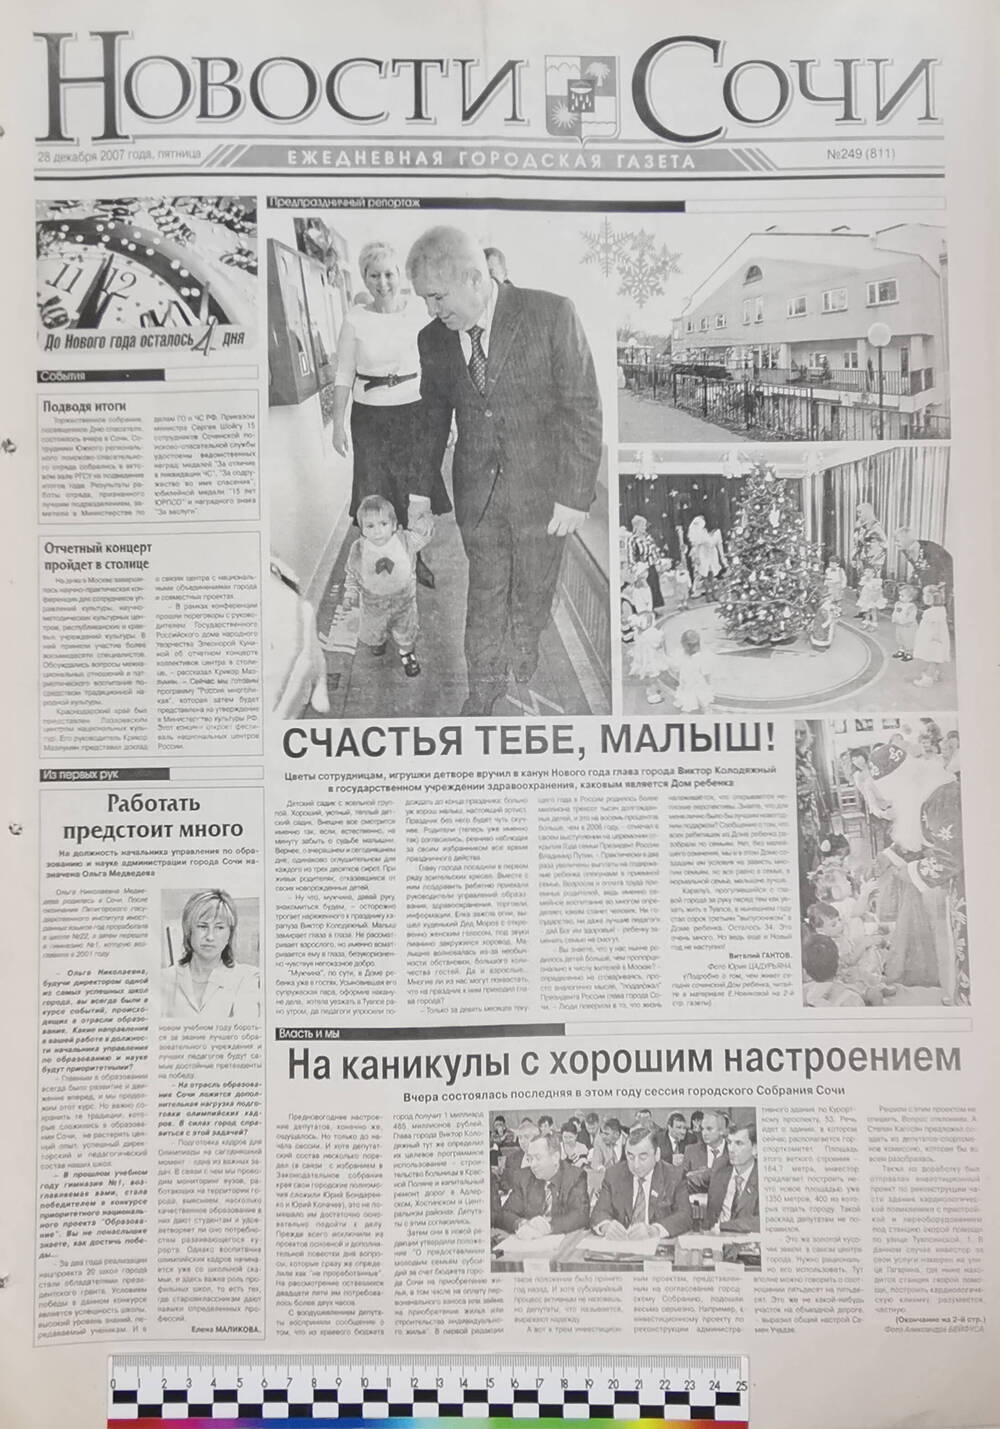 Газета ежедневная городская «Новости Сочи» № 249 (811) от 28 декабря 2007 г.